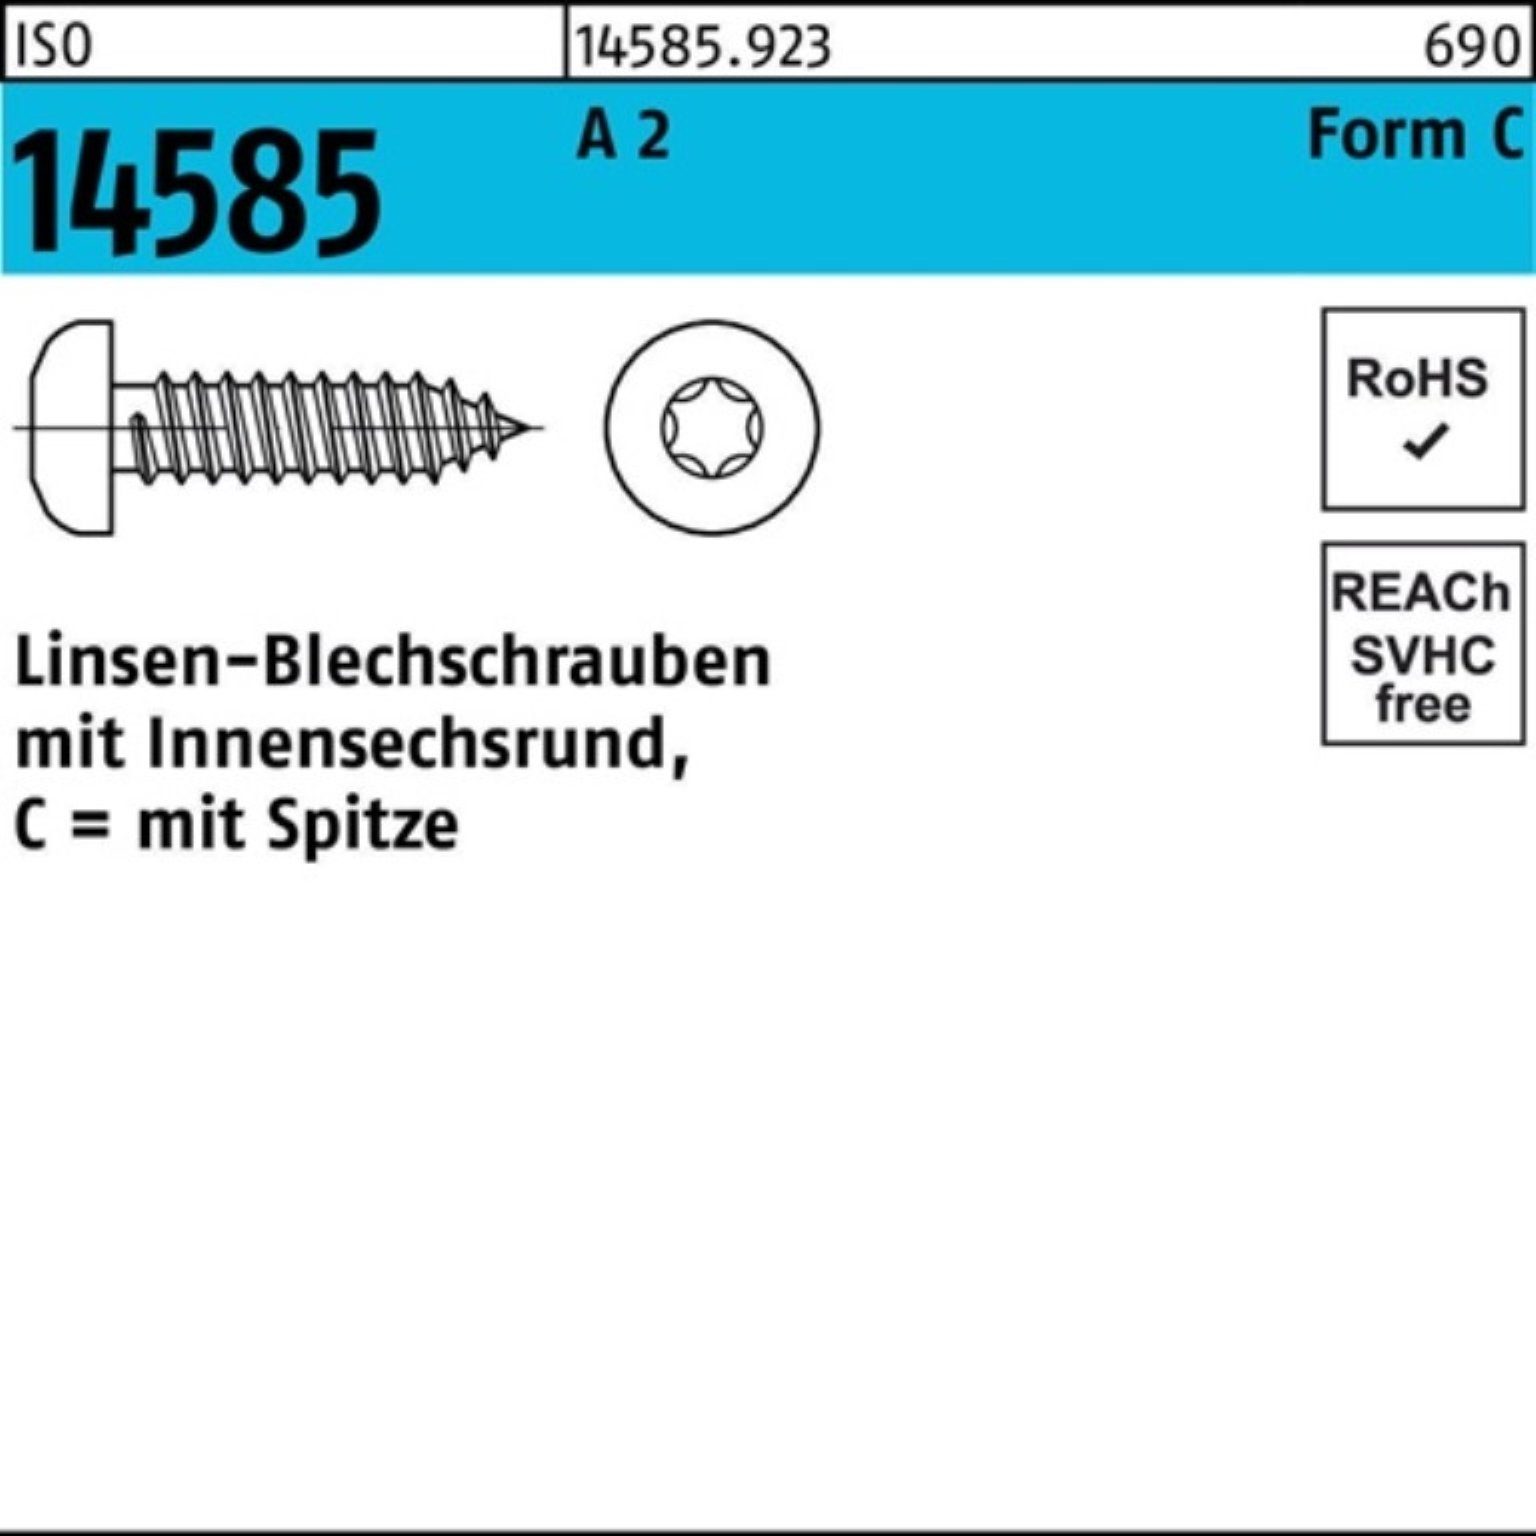 50 Blechschraube 6,3x ISR 2 T30 250 Linsenblechschraube 250er ISO -C A 14585 Pack St Reyher